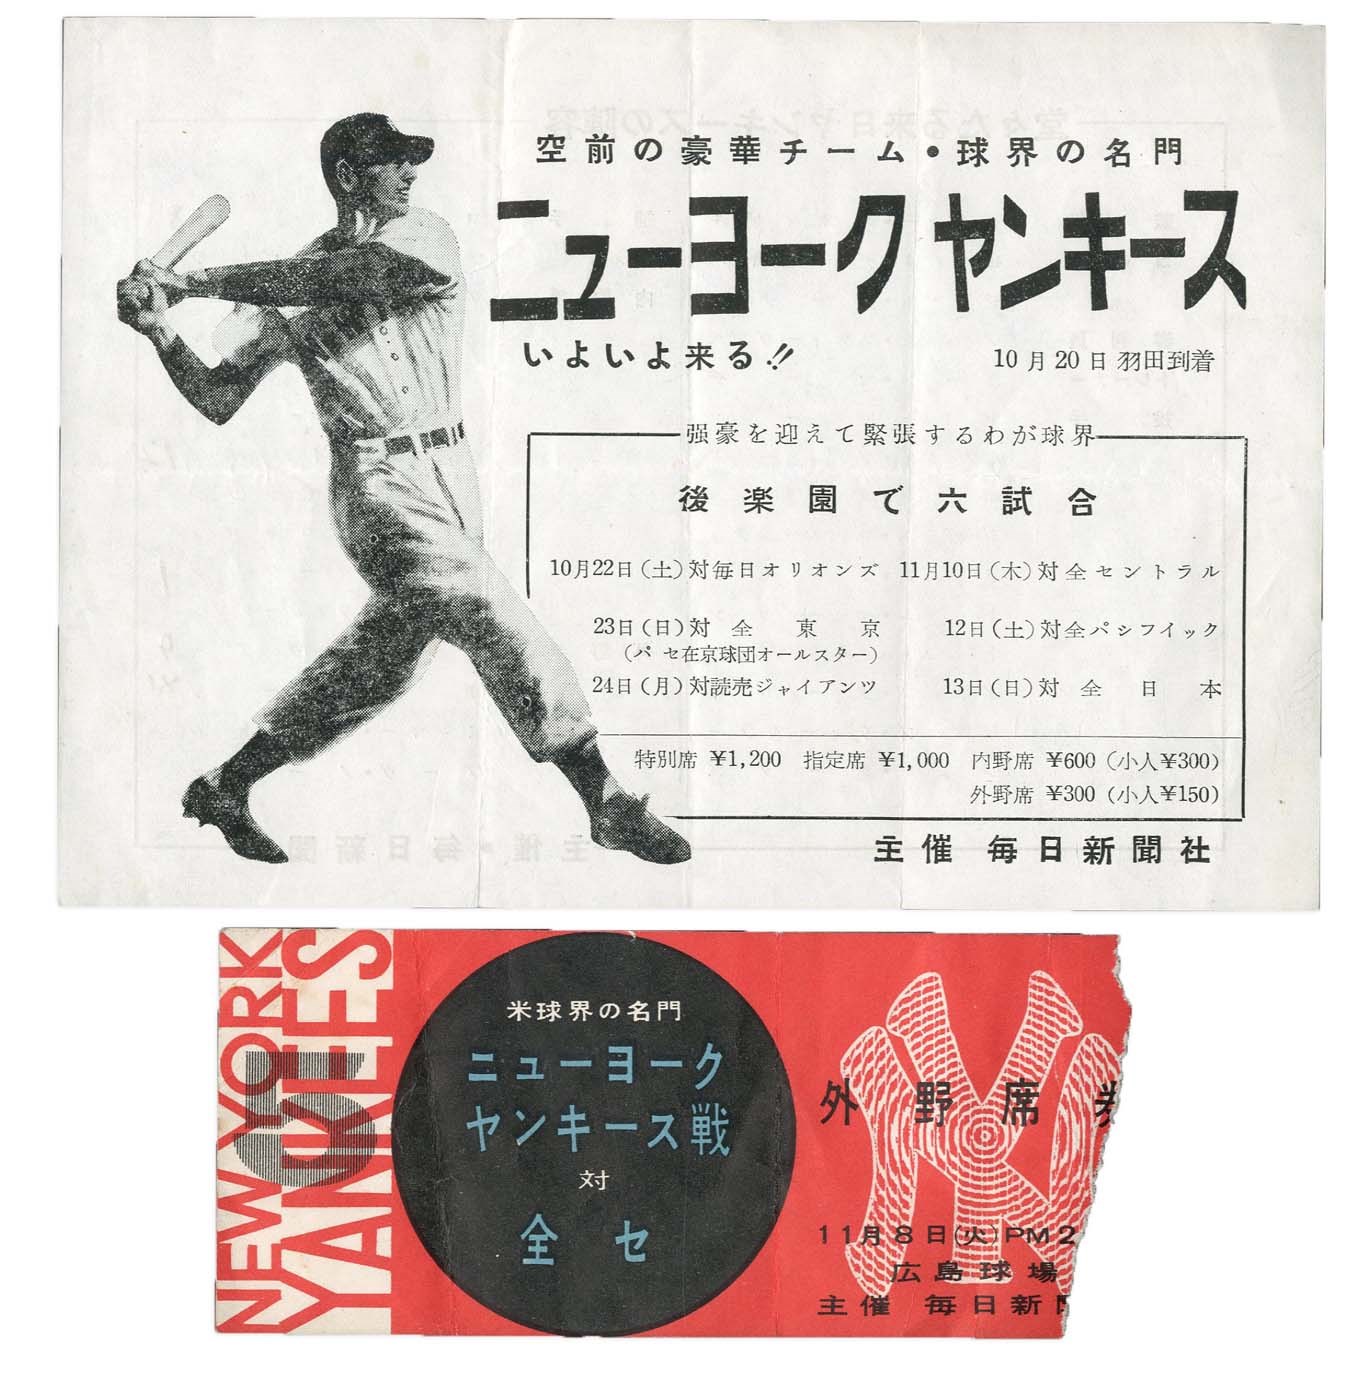 Negro League, Latin, Japanese & International Base - 1955 NY Yankees Japan Tour Flyer & Ticket